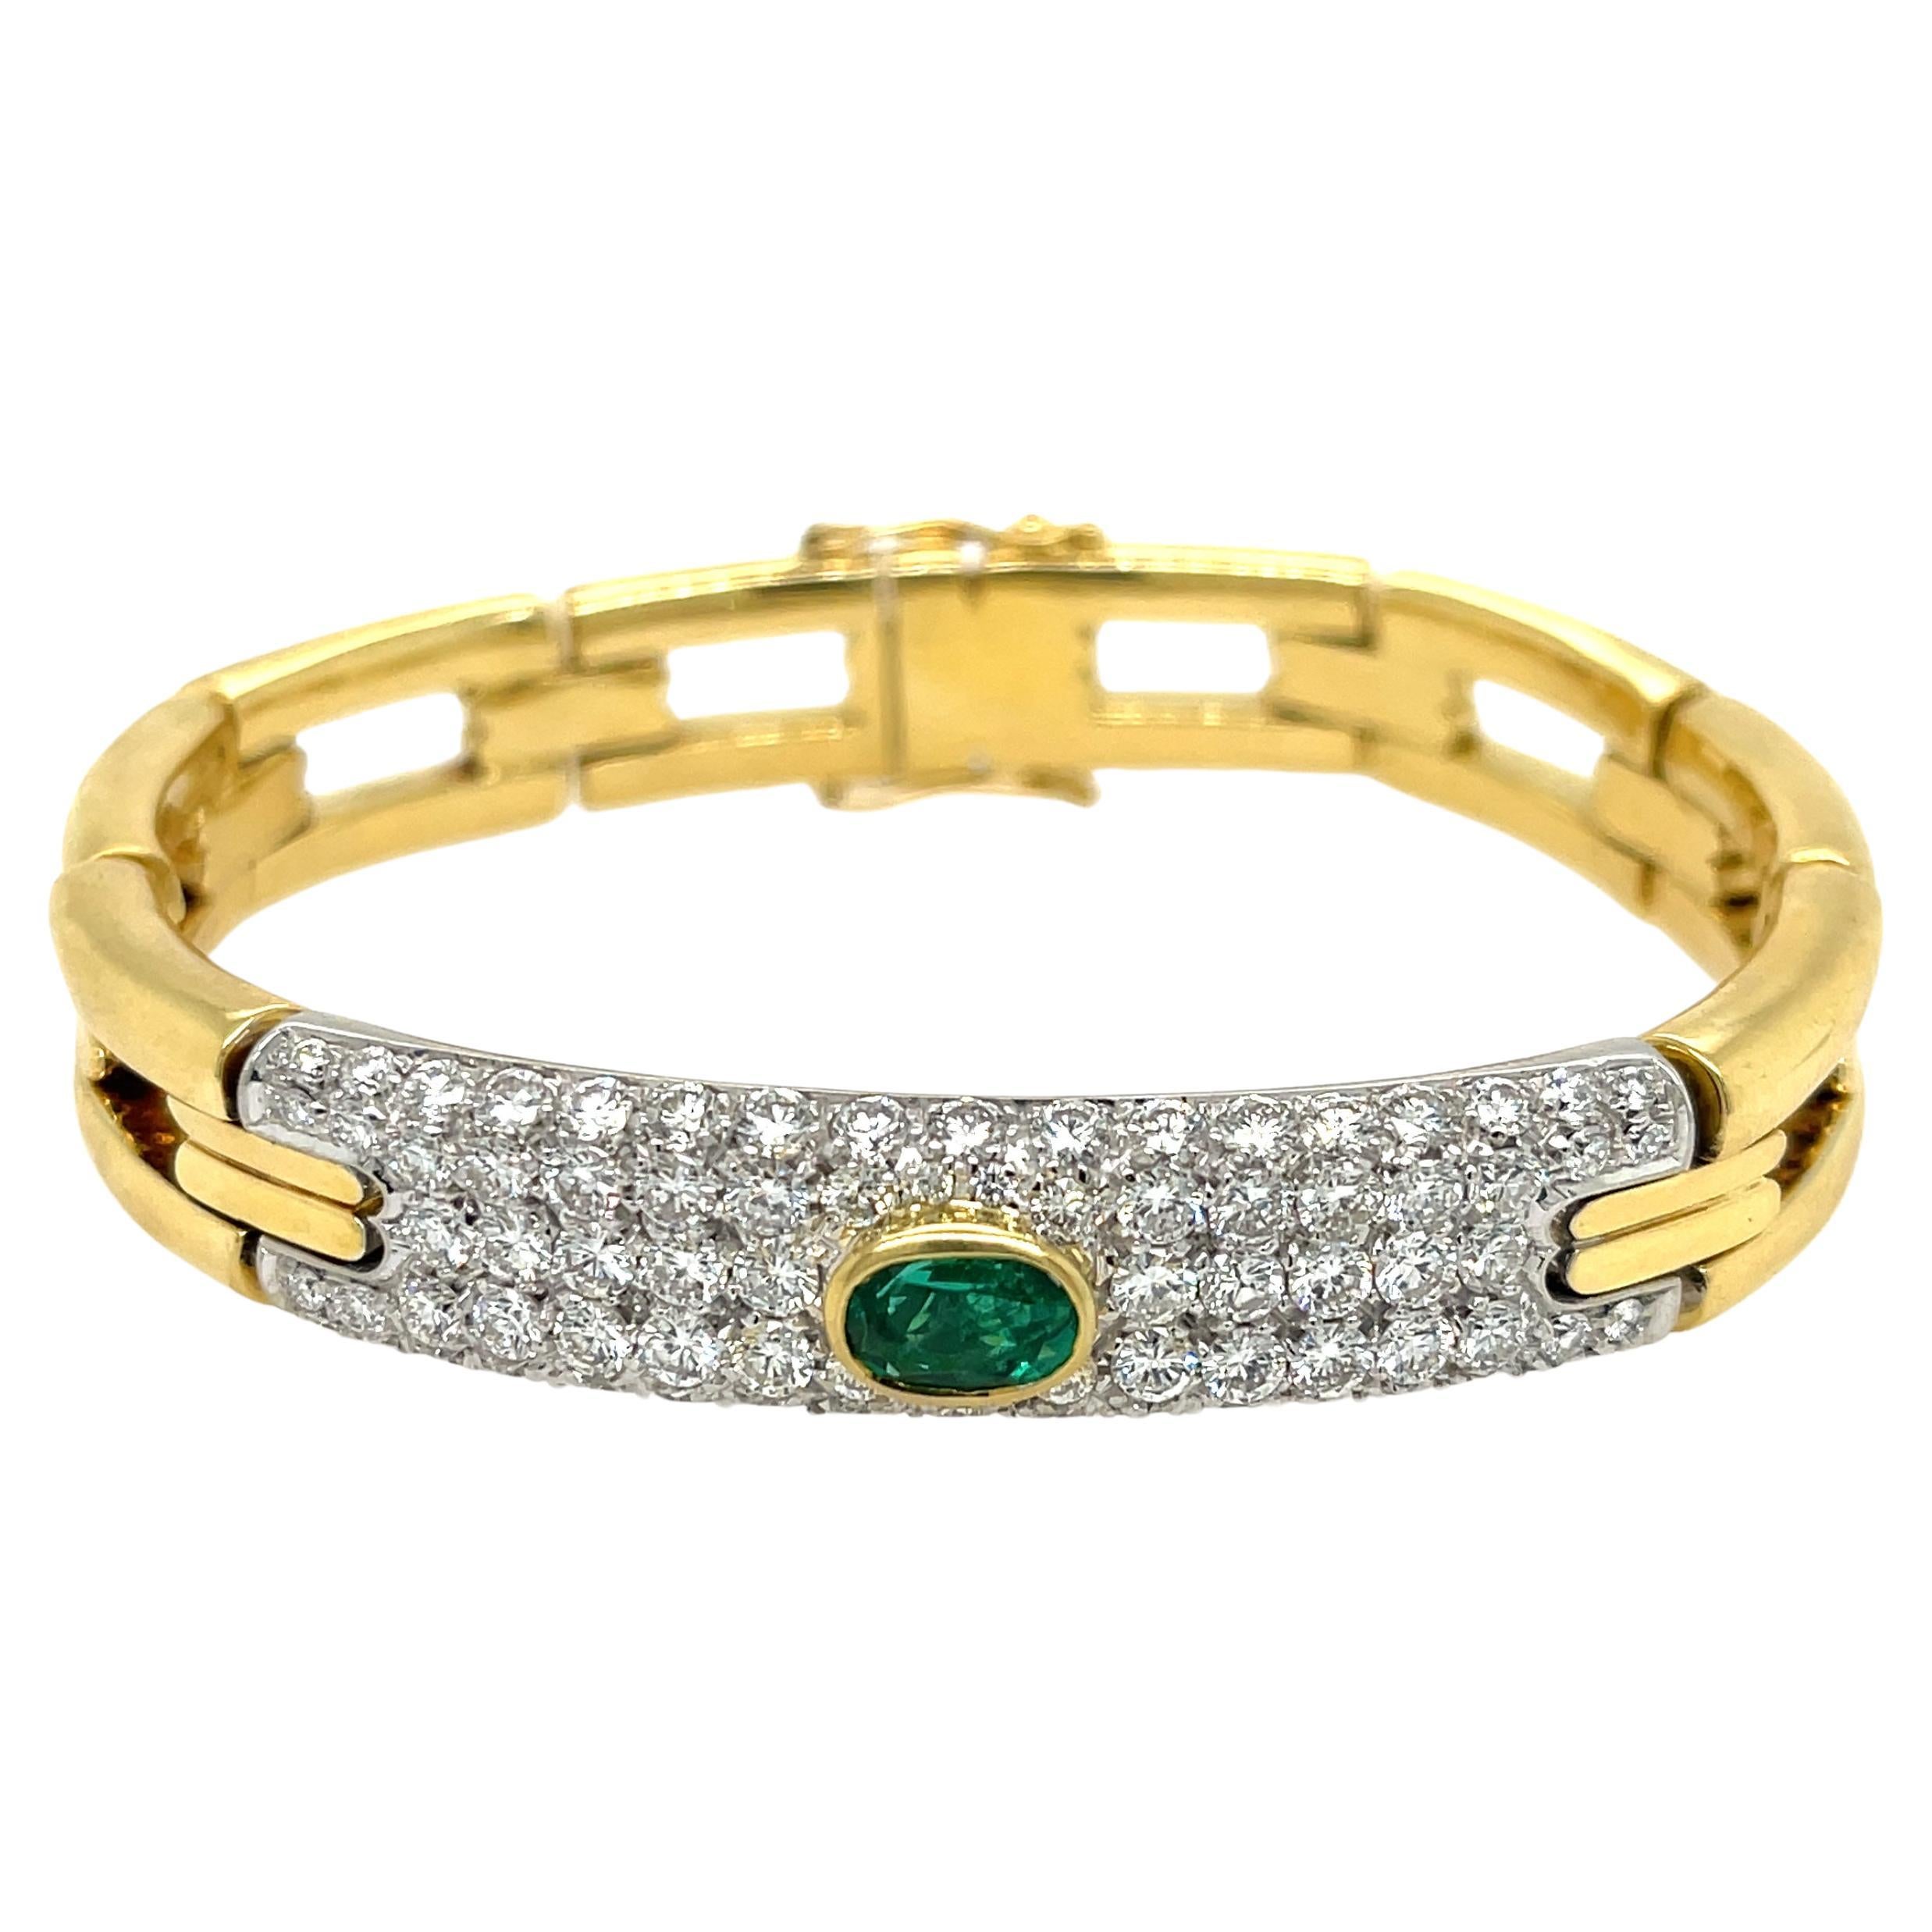 Nachlass Damiani Armband aus 18 Karat Gelbgold mit Smaragd und Diamanten